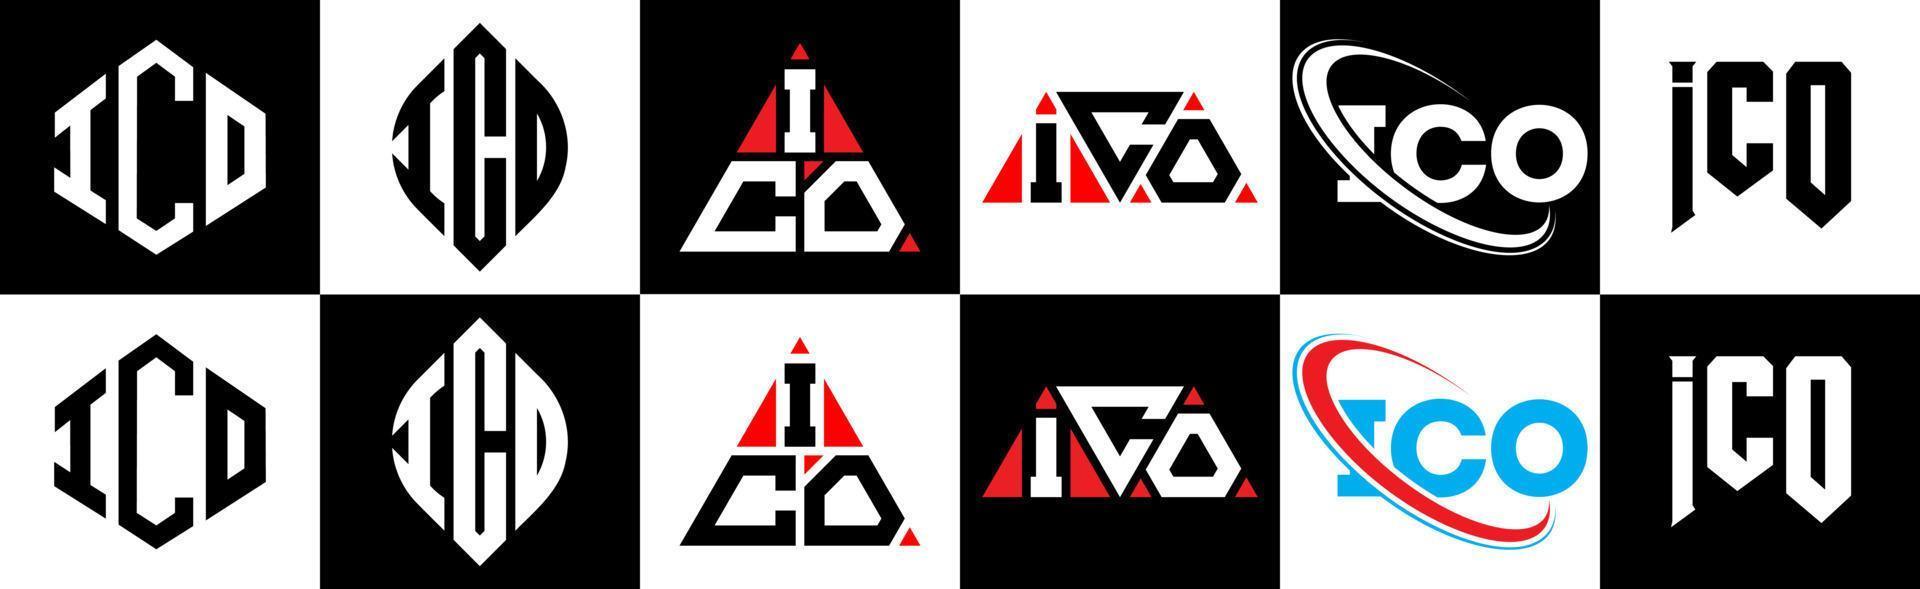 création de logo de lettre ico dans six styles. ico polygone, cercle, triangle, hexagone, style plat et simple avec logo de lettre de variation de couleur noir et blanc dans un plan de travail. ico logo minimaliste et classique vecteur